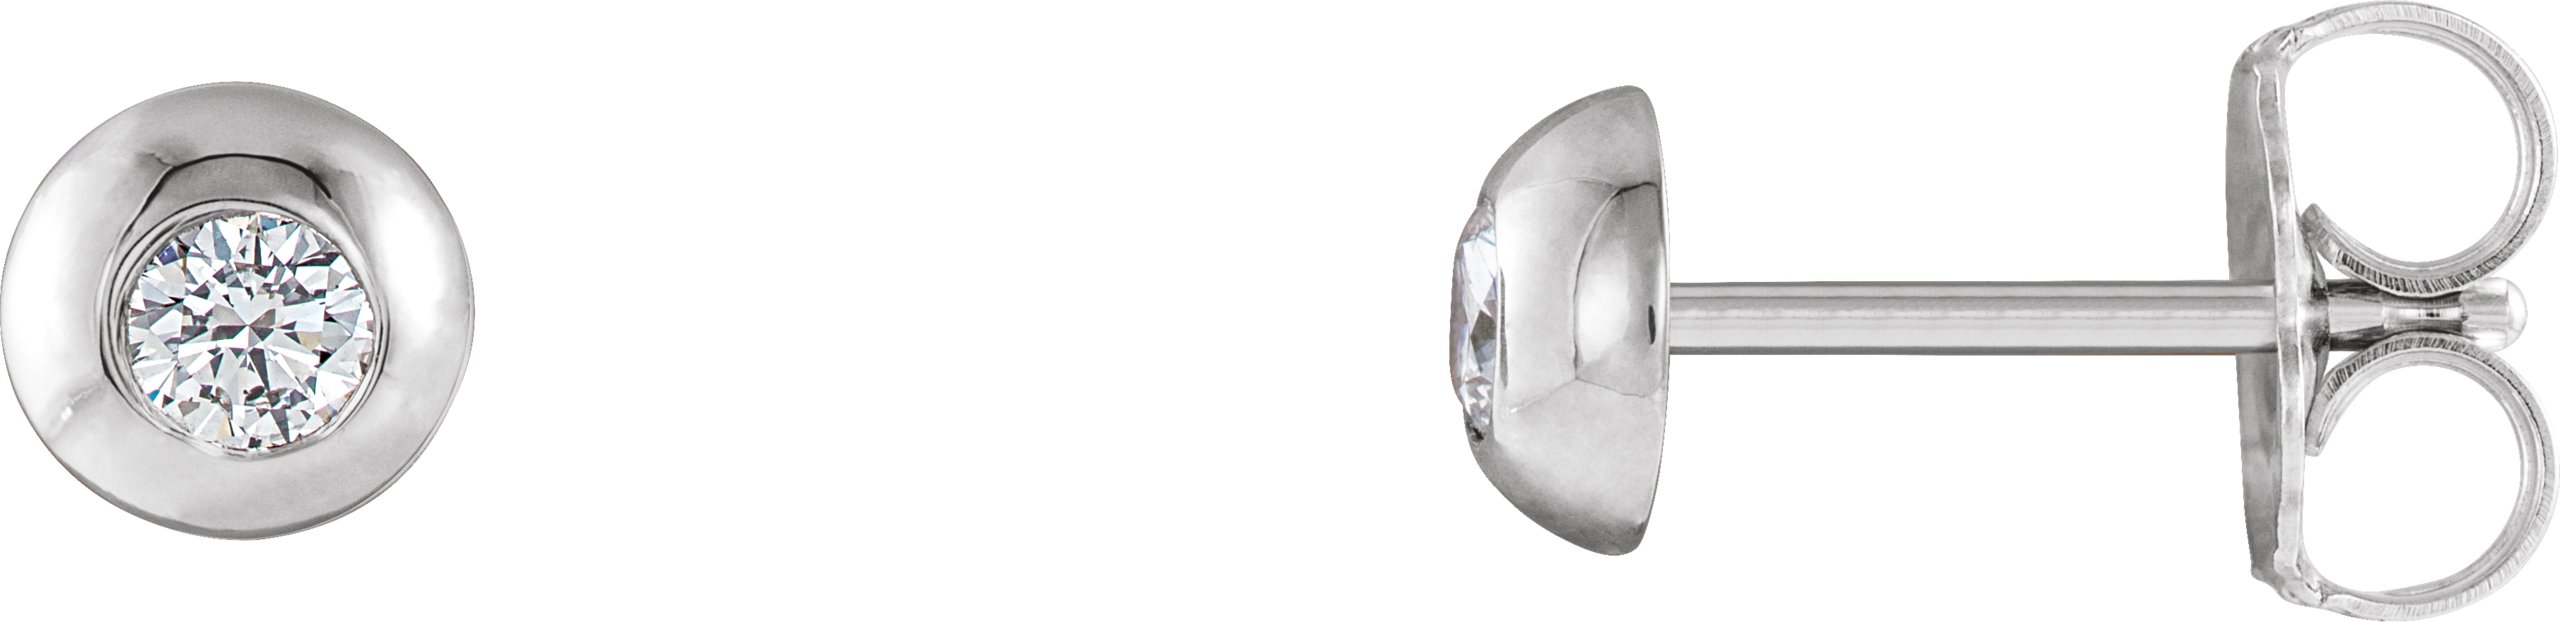 14K White 1/5 CTW Natural Diamond Domed Stud Earring